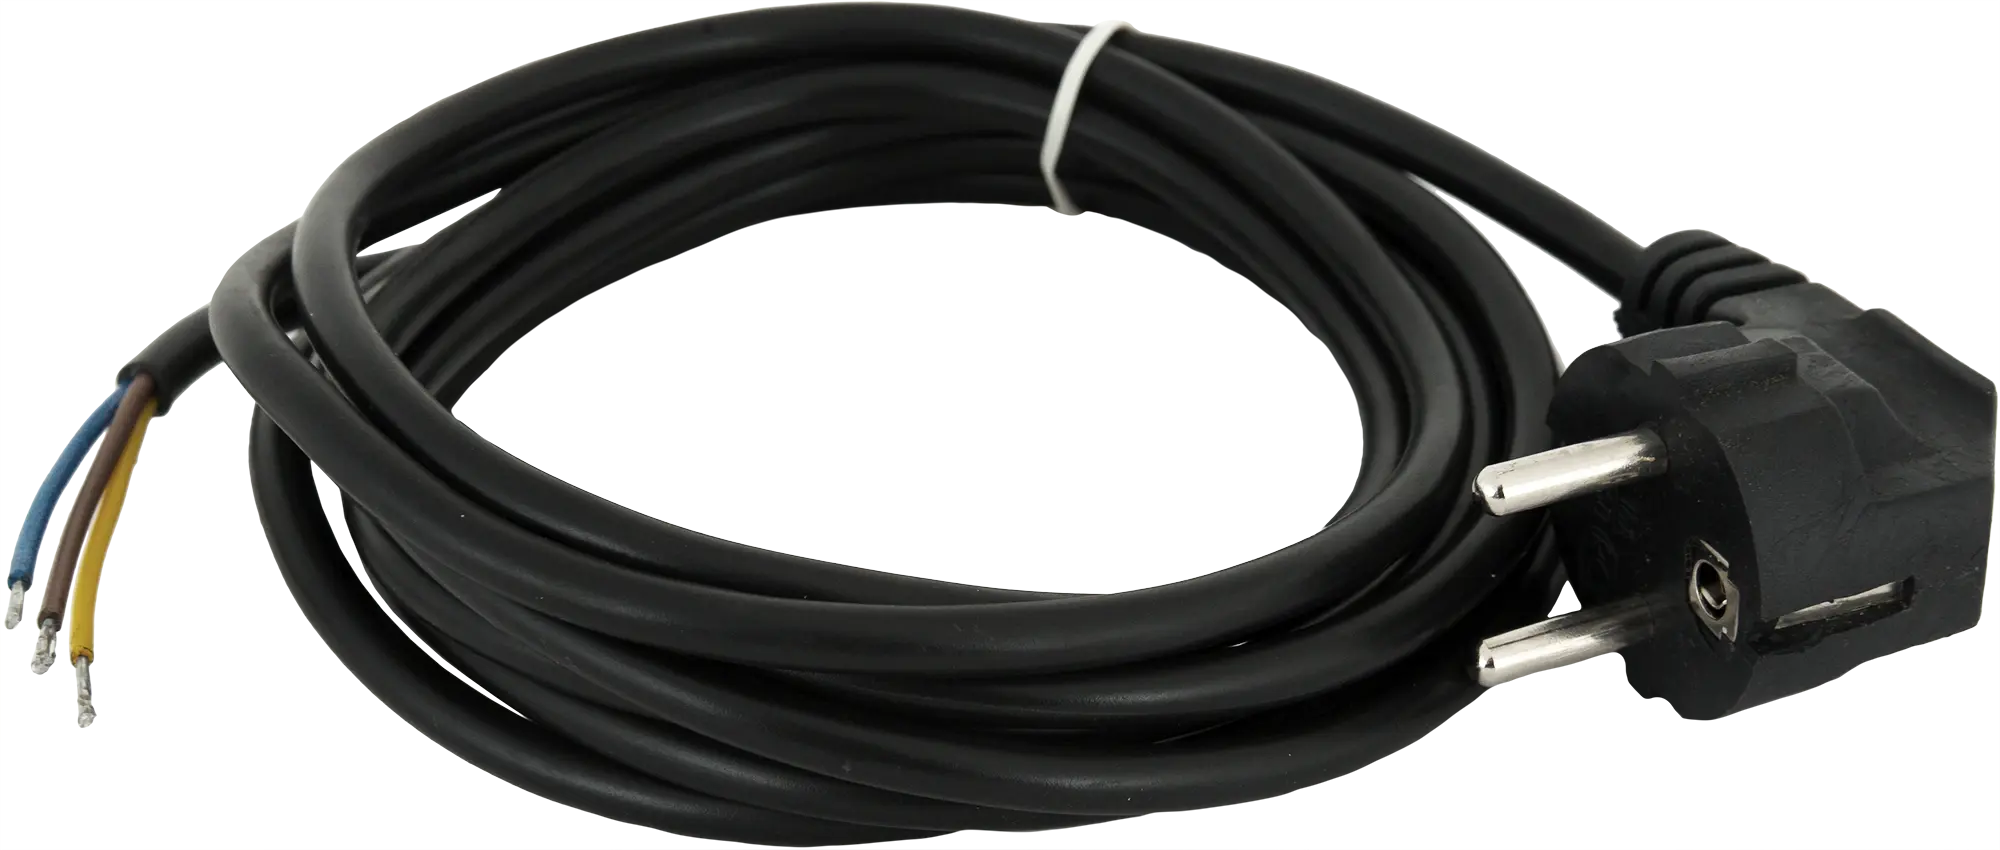 Шнур сетевой с заземлением 10 A 1.5 м цвет чёрный шнур сетевой с заземлением 10 a 1 5 м чёрный